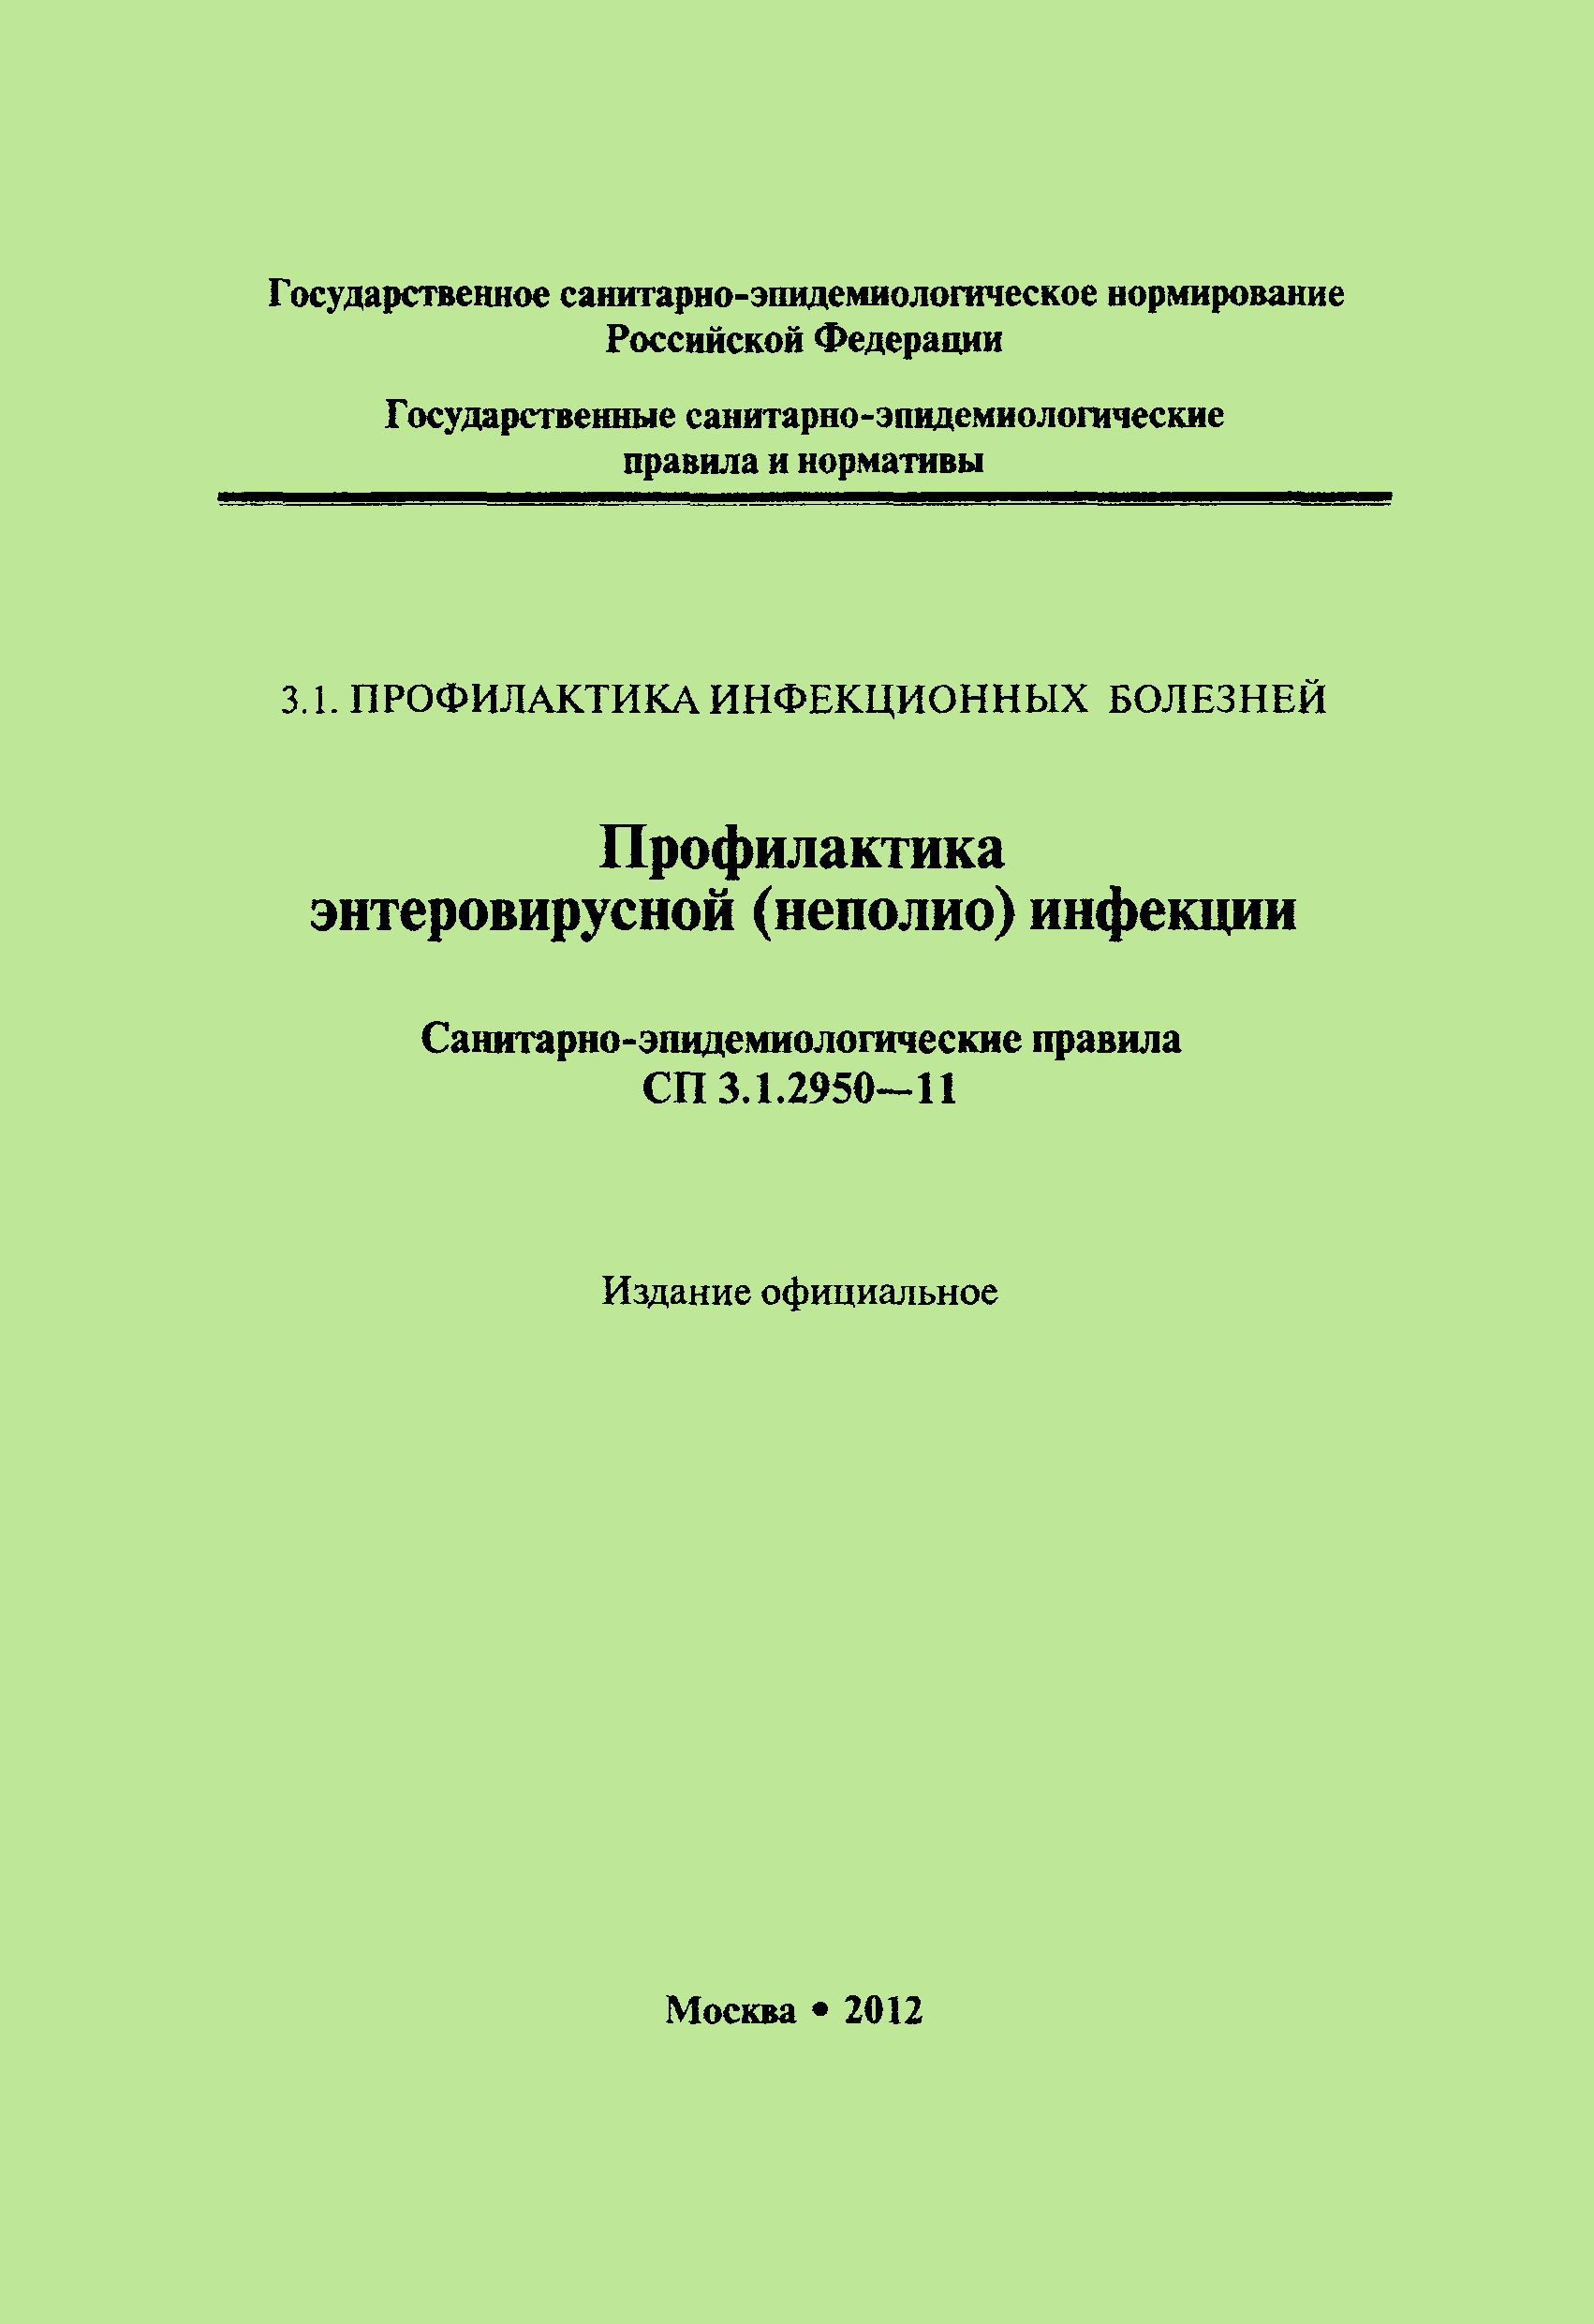 СП 3.1.2950-11